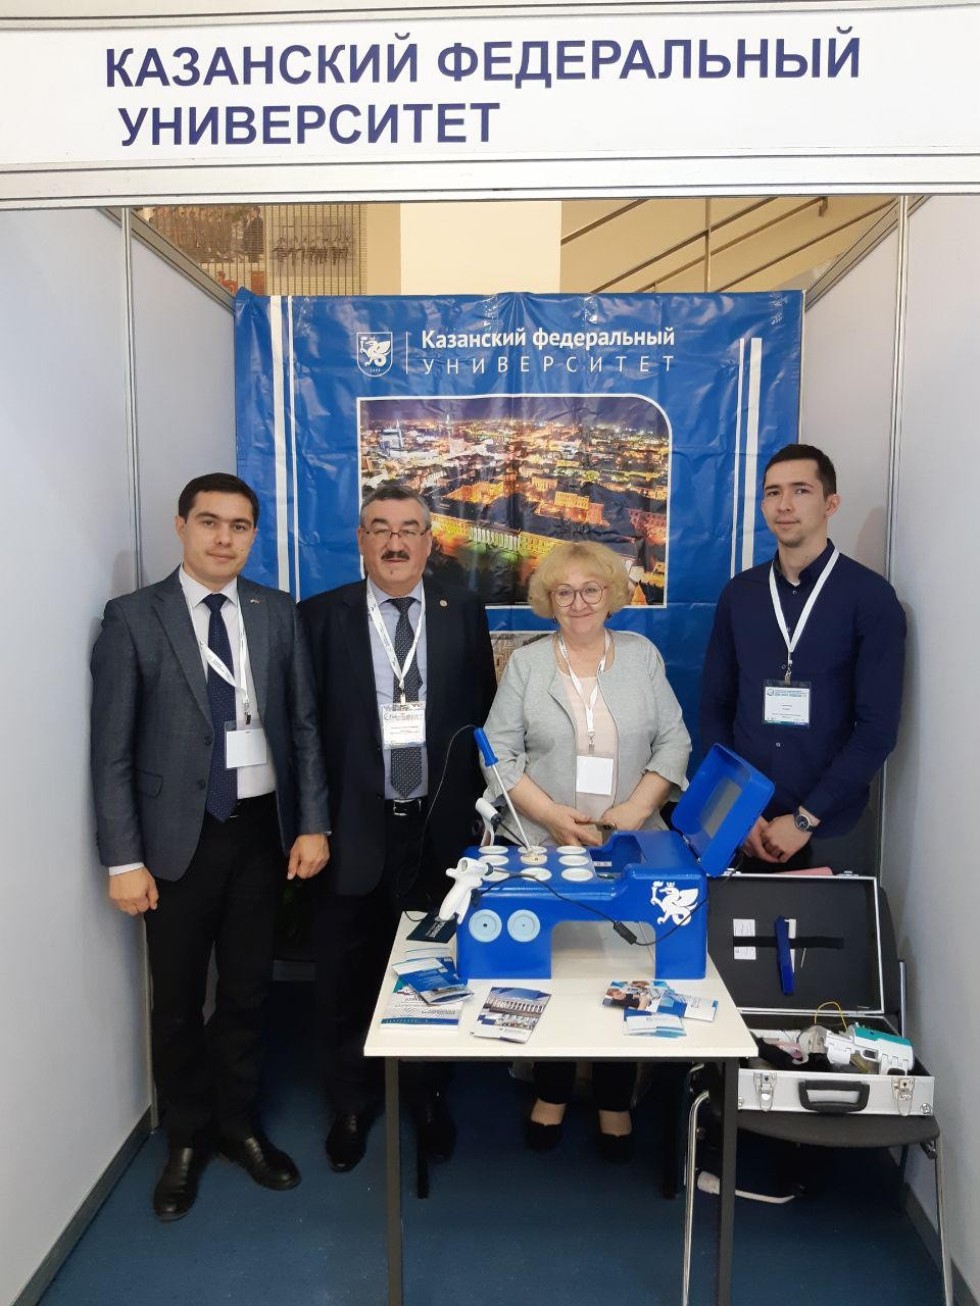     II -    'Expo-Russia Uzbekistan-2019' ,  